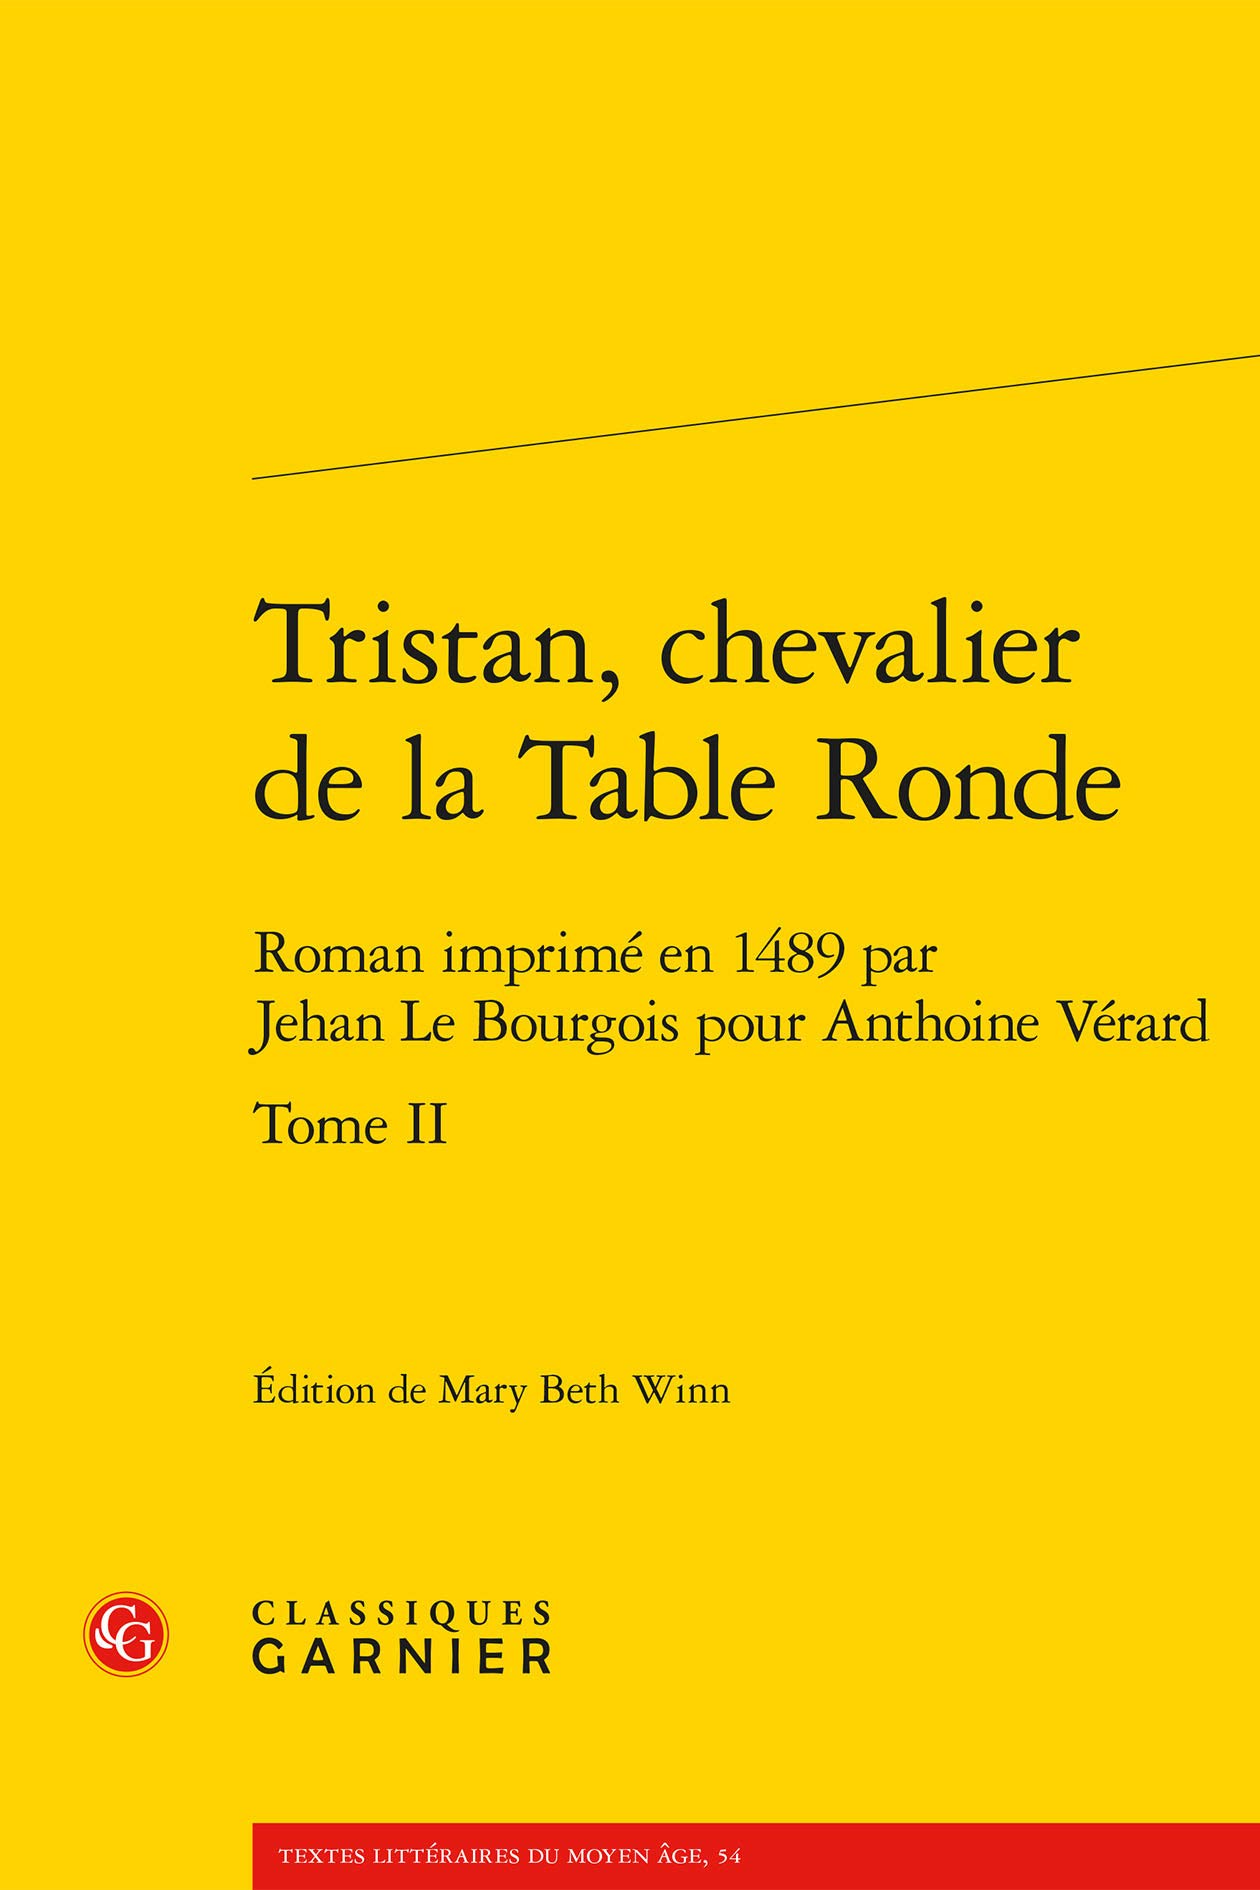 Tristan, chevalier de la Table Ronde. Tome II Roman imprimé en 1489 par Jehan Le Bourgois pour Anthoine Vérard. Edited by Mary Beth Winn